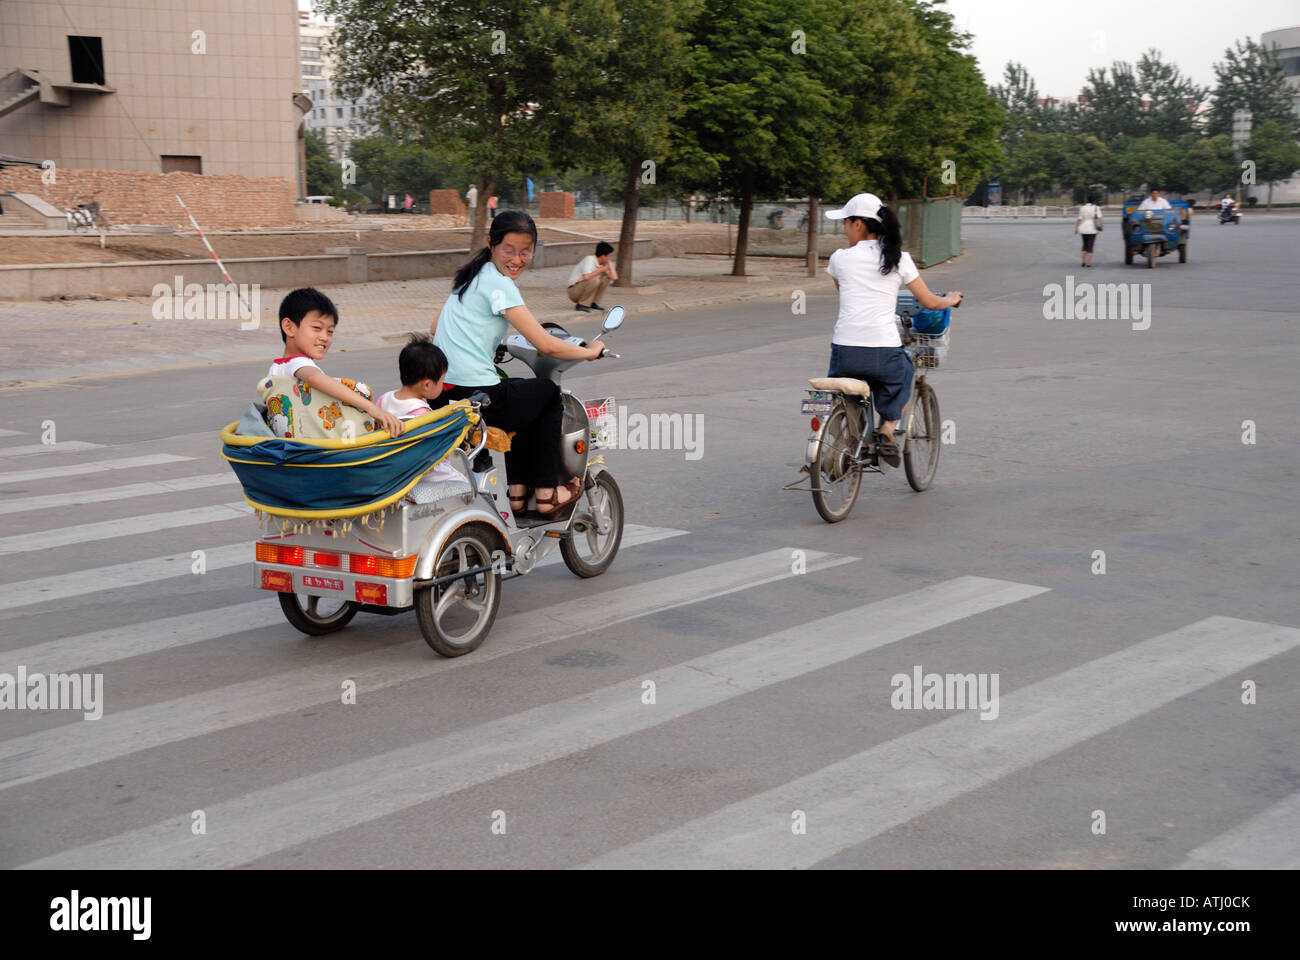 Mère avec des enfants sur un tricycle rickshaw Shangqiu City dans la province du Henan Chine Asie Banque D'Images